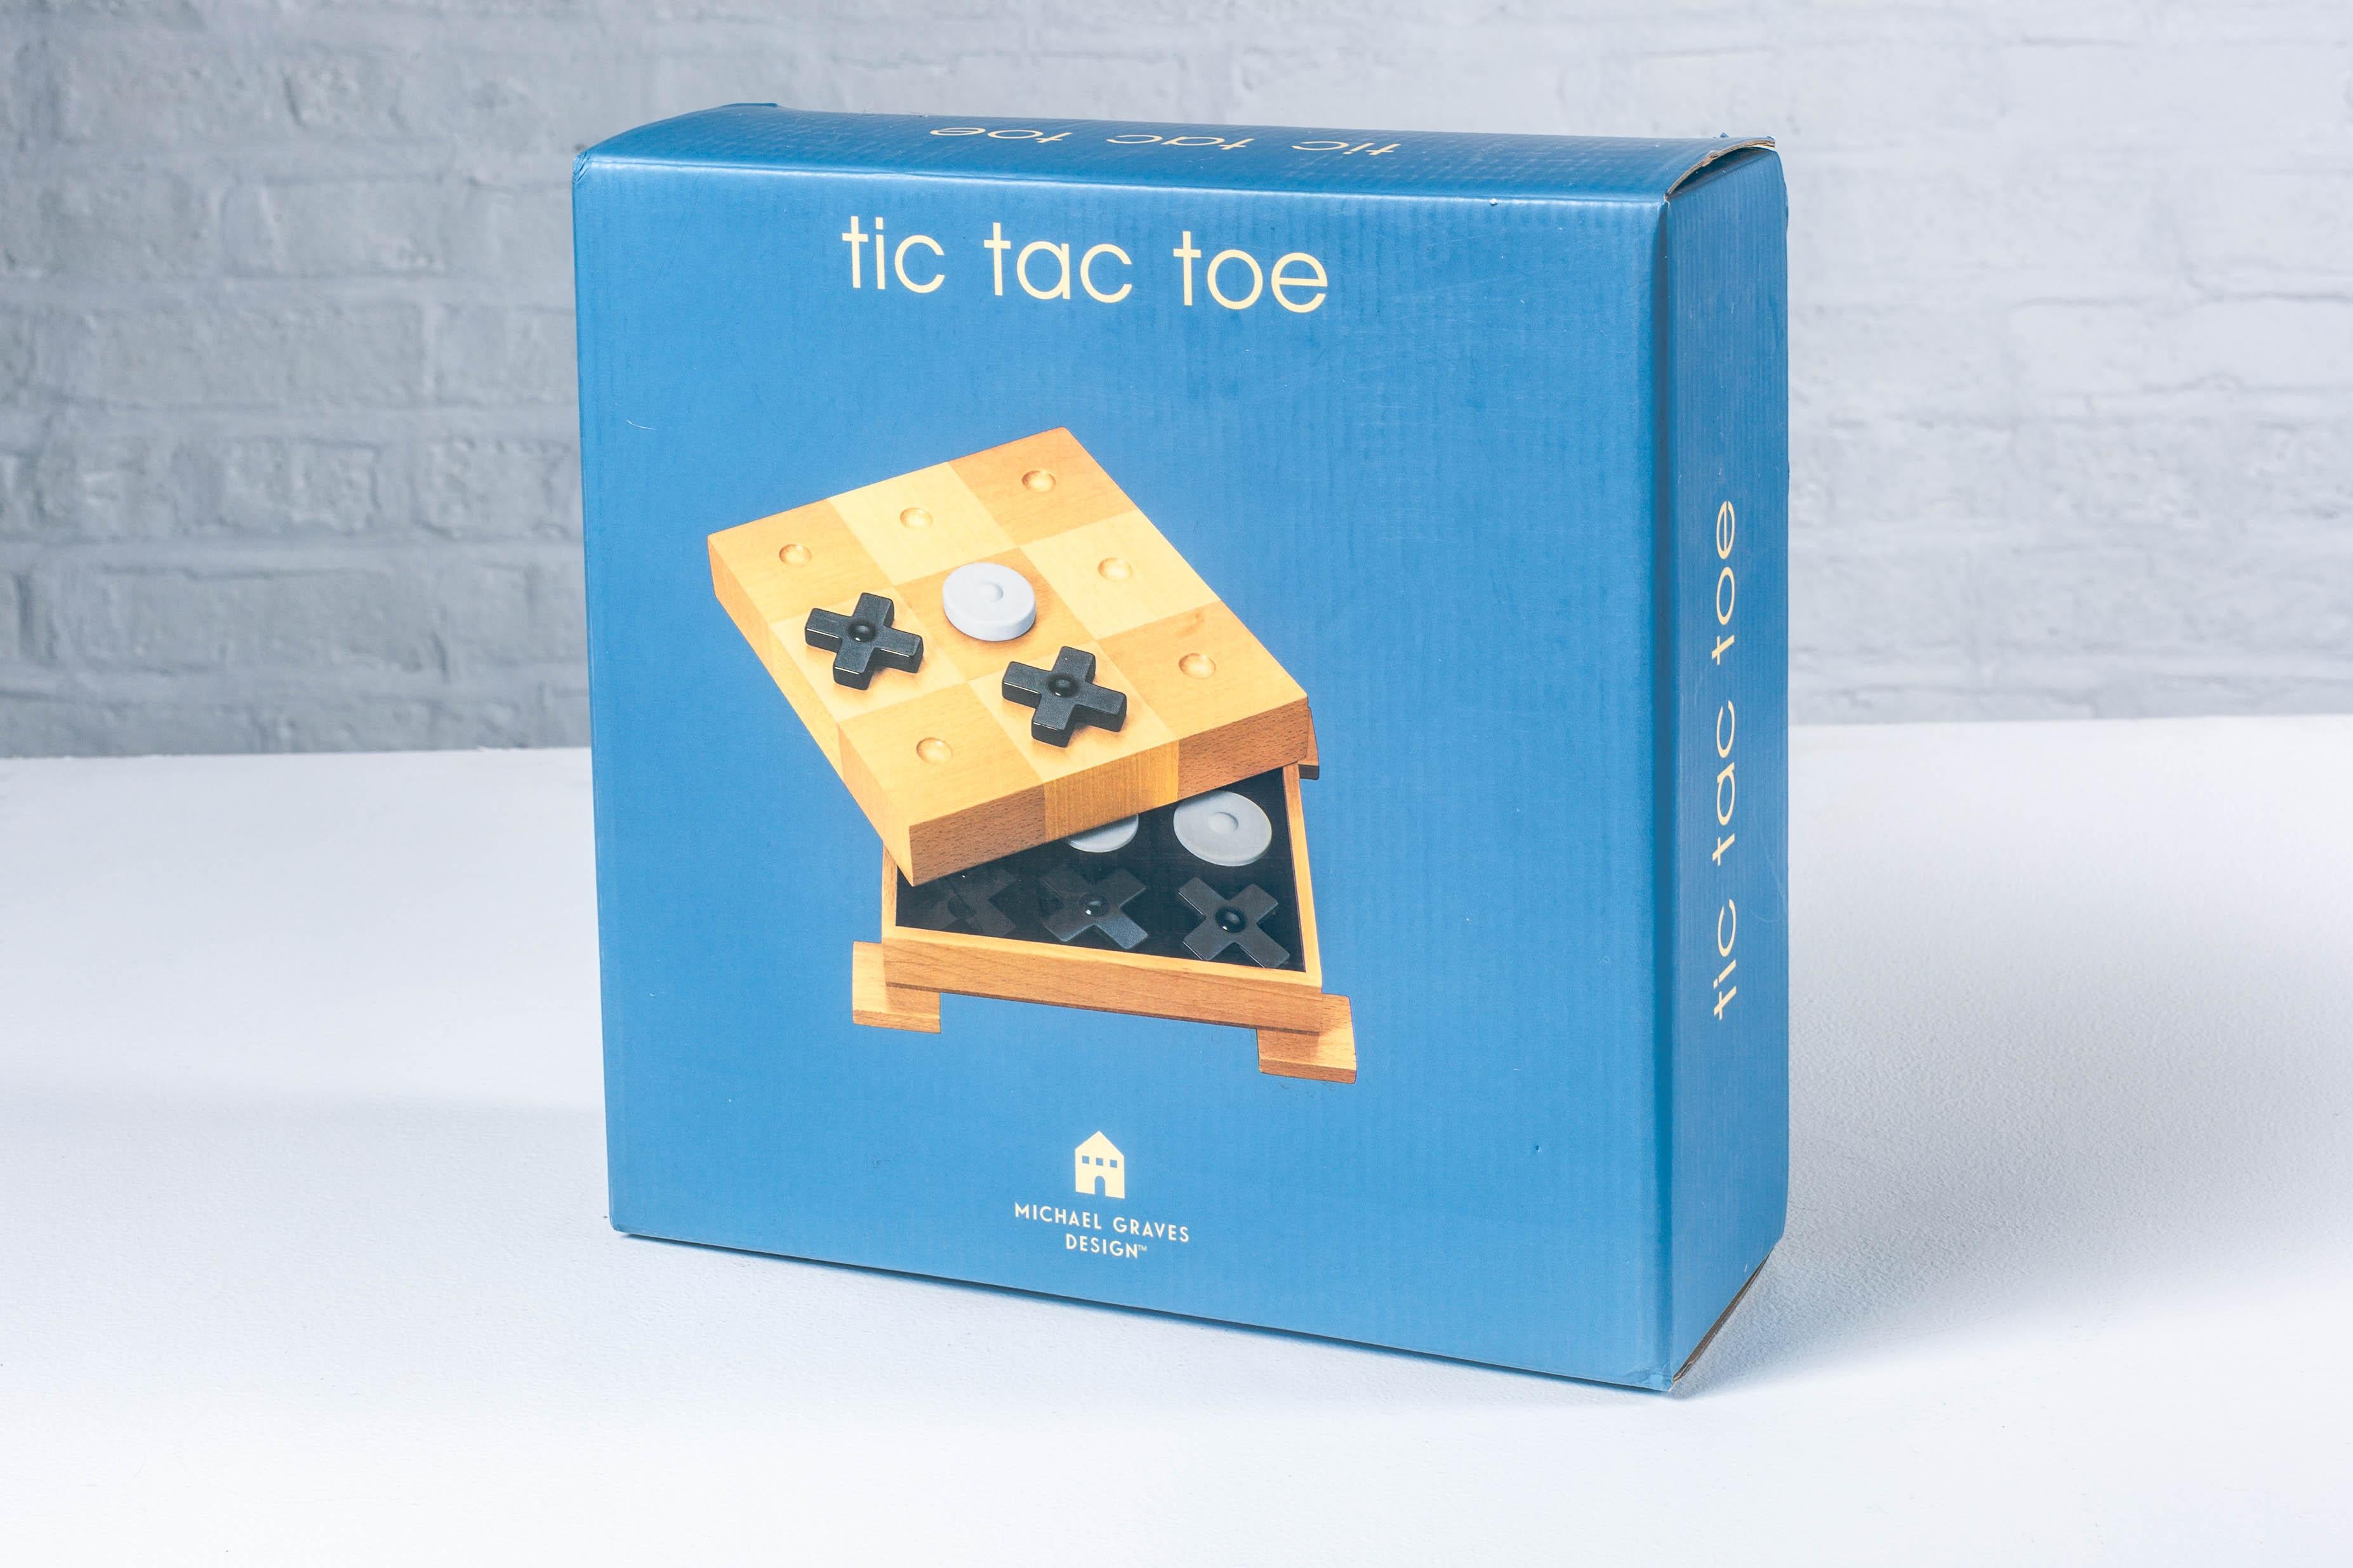 Conçu par Michael Graves, ce jeu de société Tic Tac Toe présente un style postmoderne élégant et fort. Le damier repose sur 4 pieds carrés, ce qui donne au jeu l'aspect d'un monument sur piédestal. Le conseil sert une boîte contenant tous les